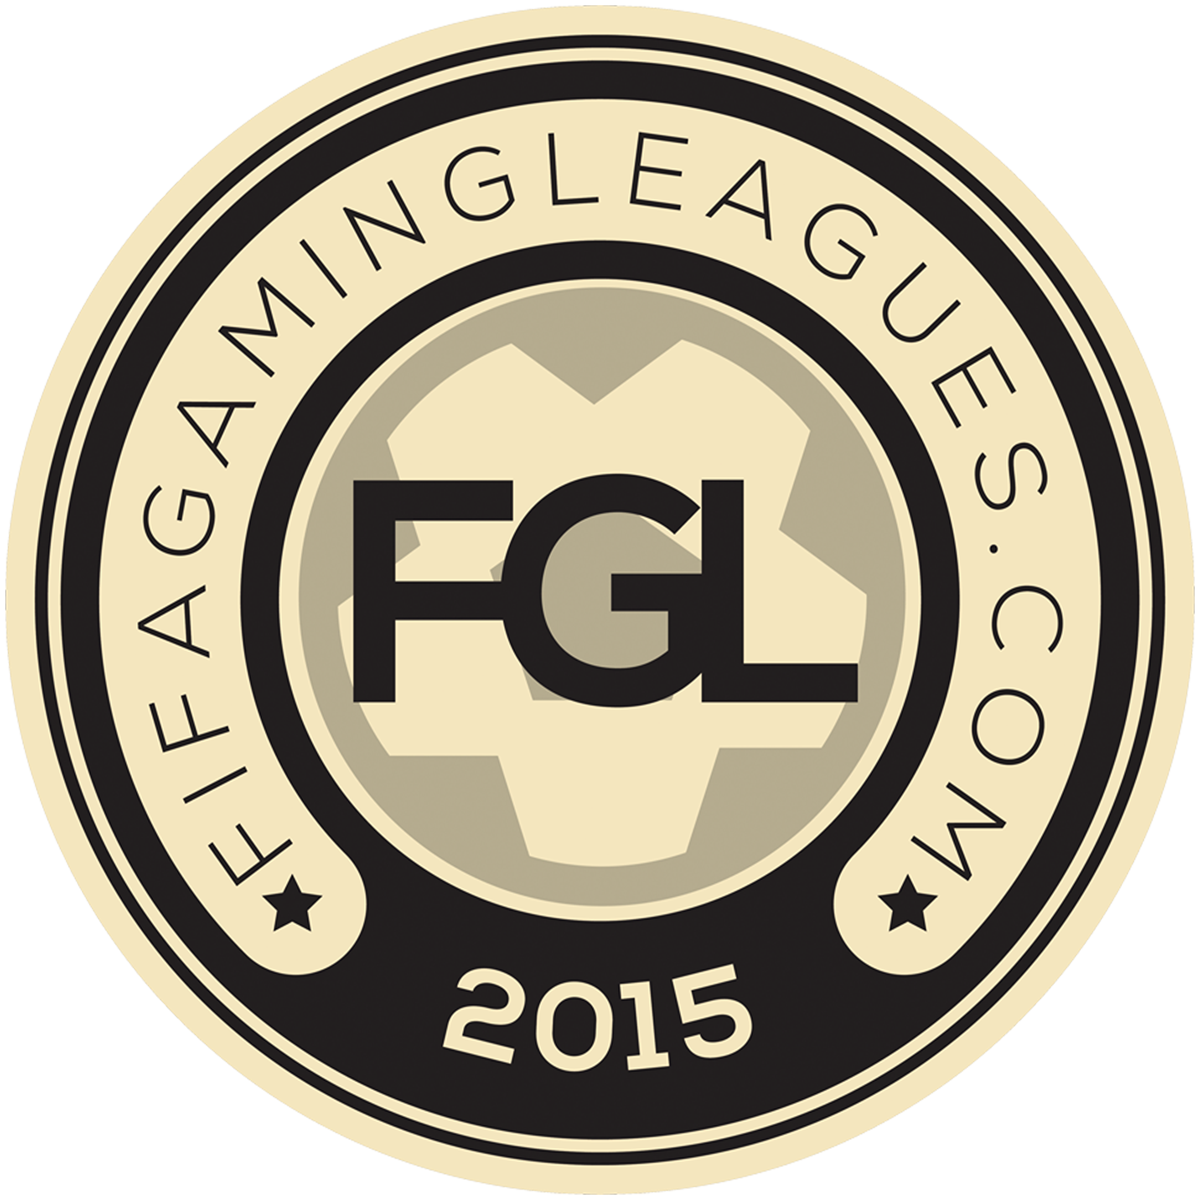 The FGL logo.